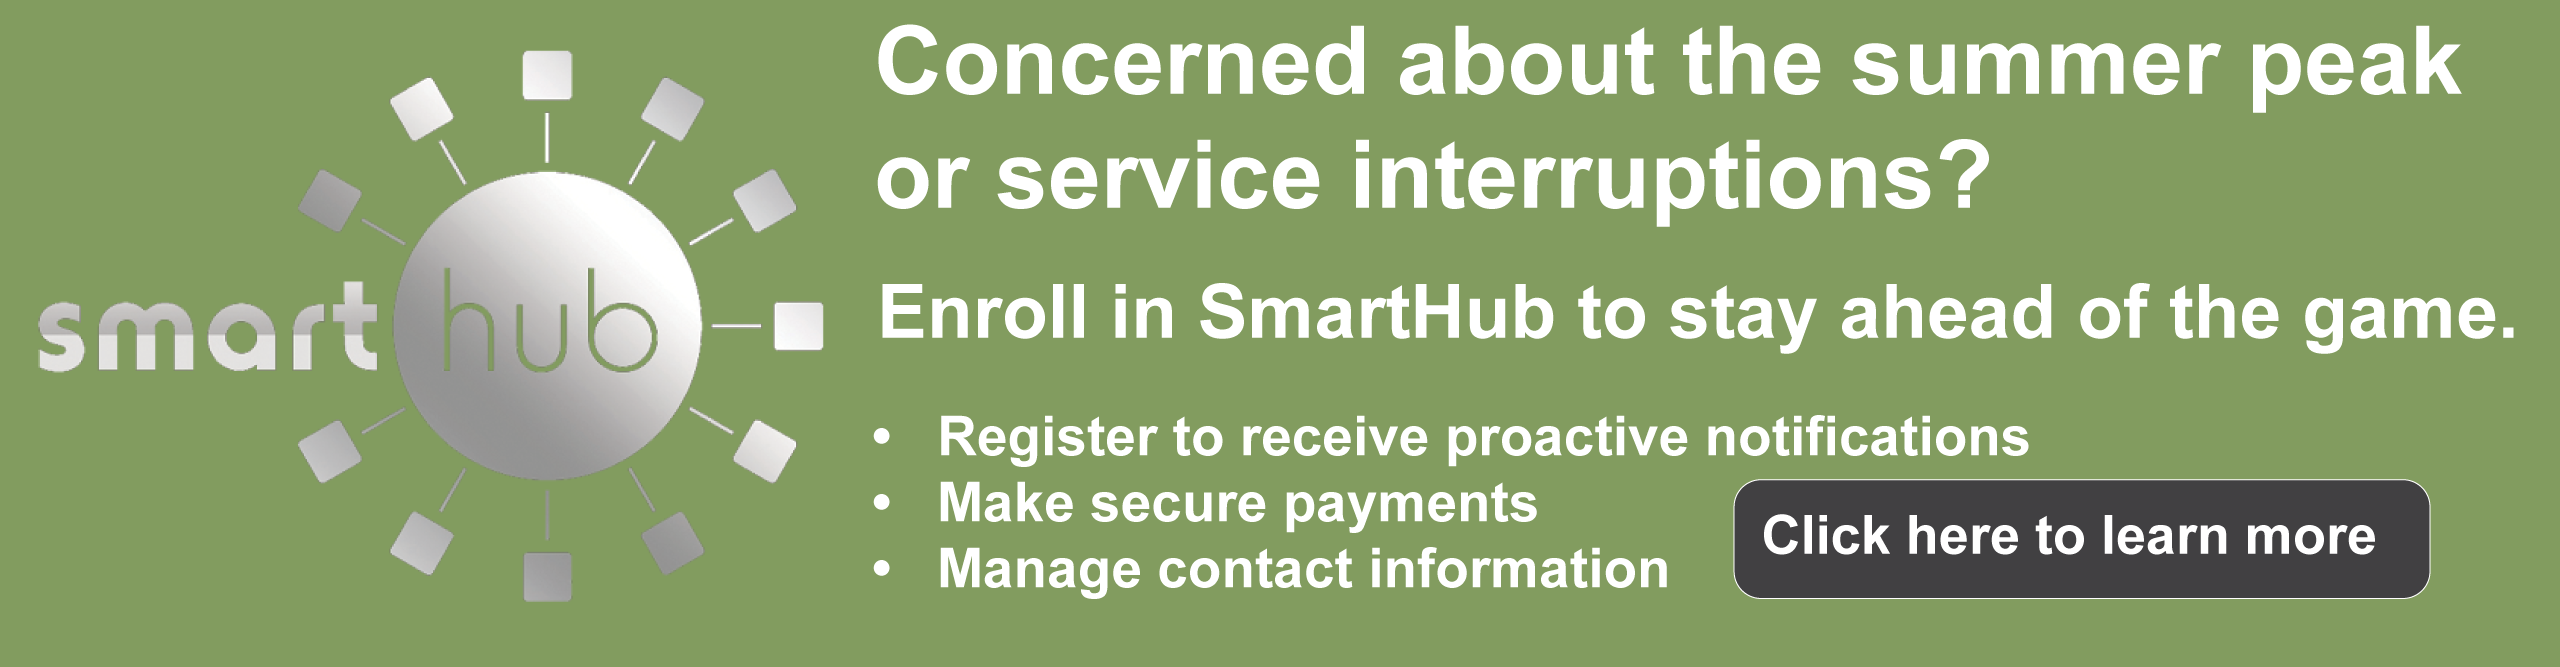 SmartHub Outage Registration